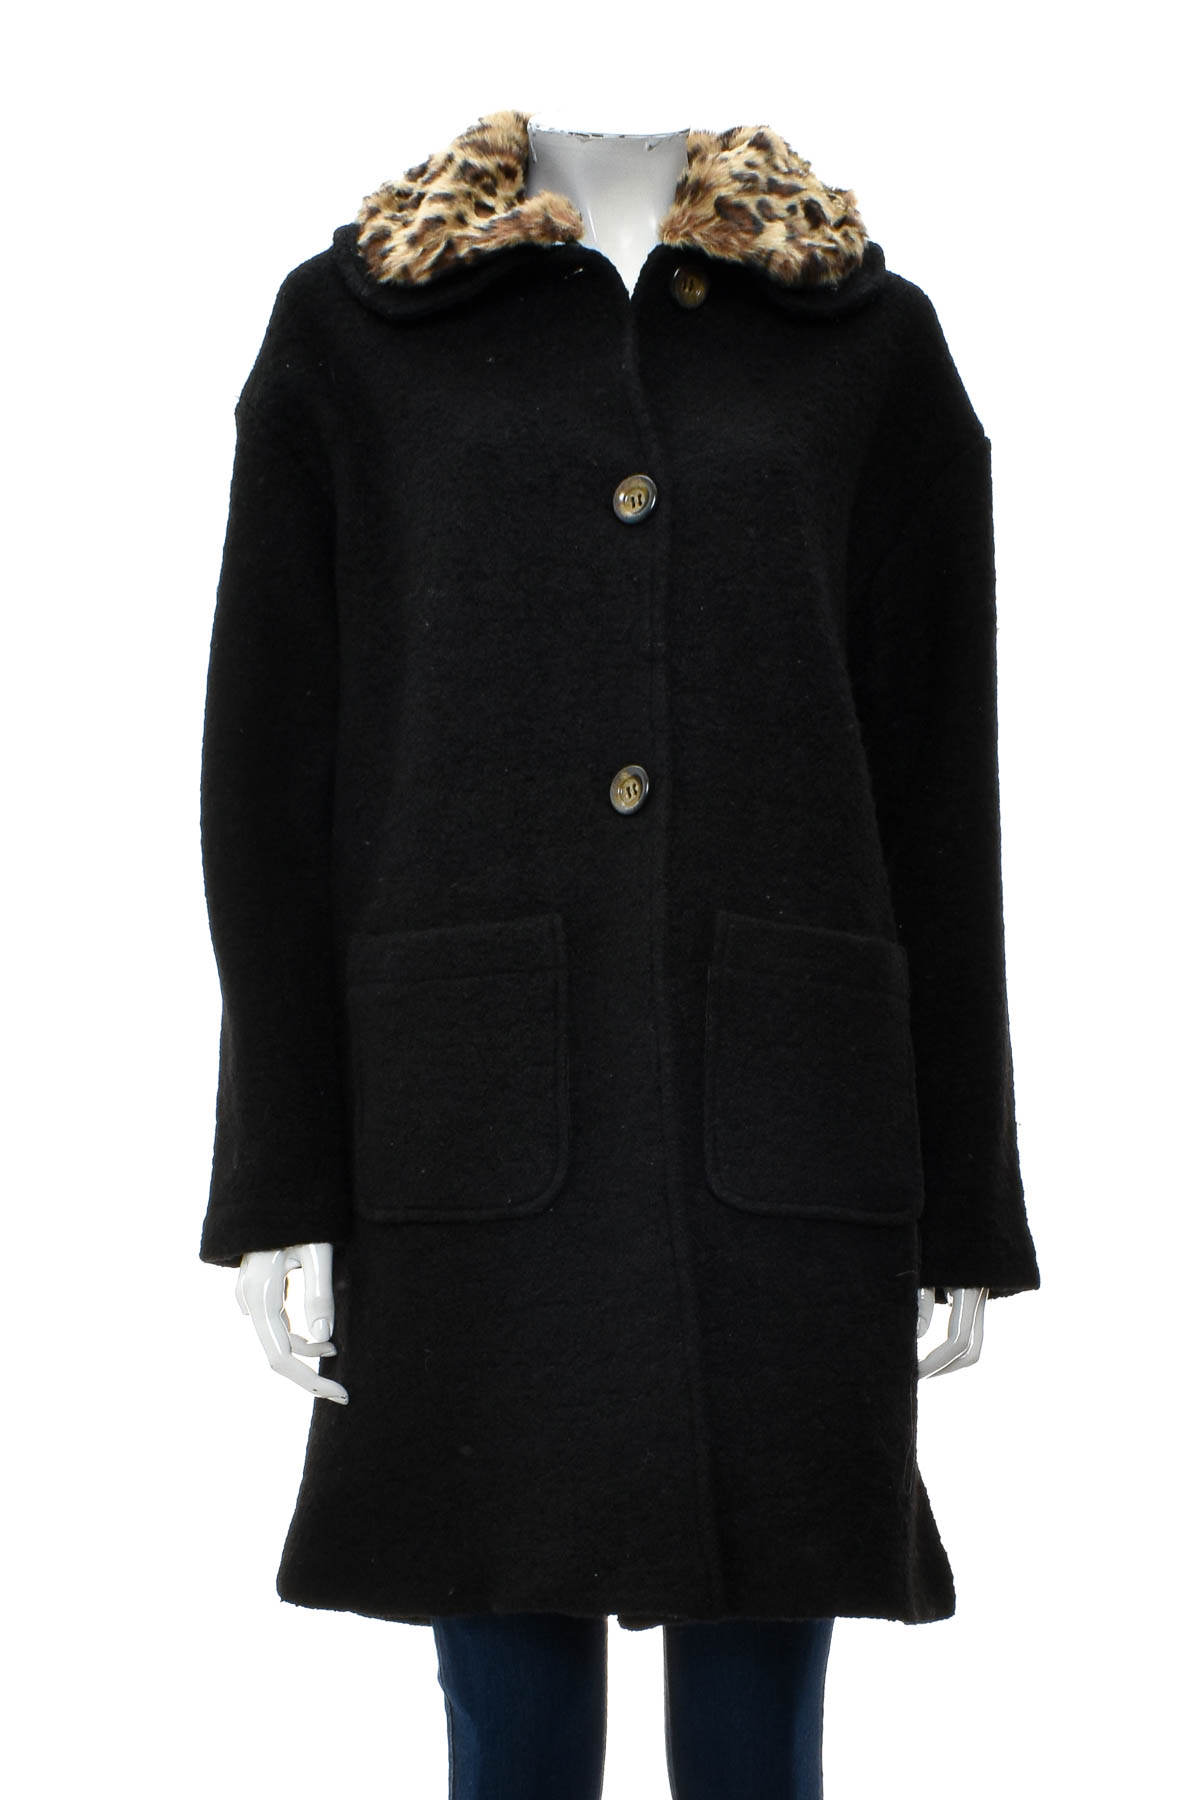 Women's coat - Bella Loren - 0